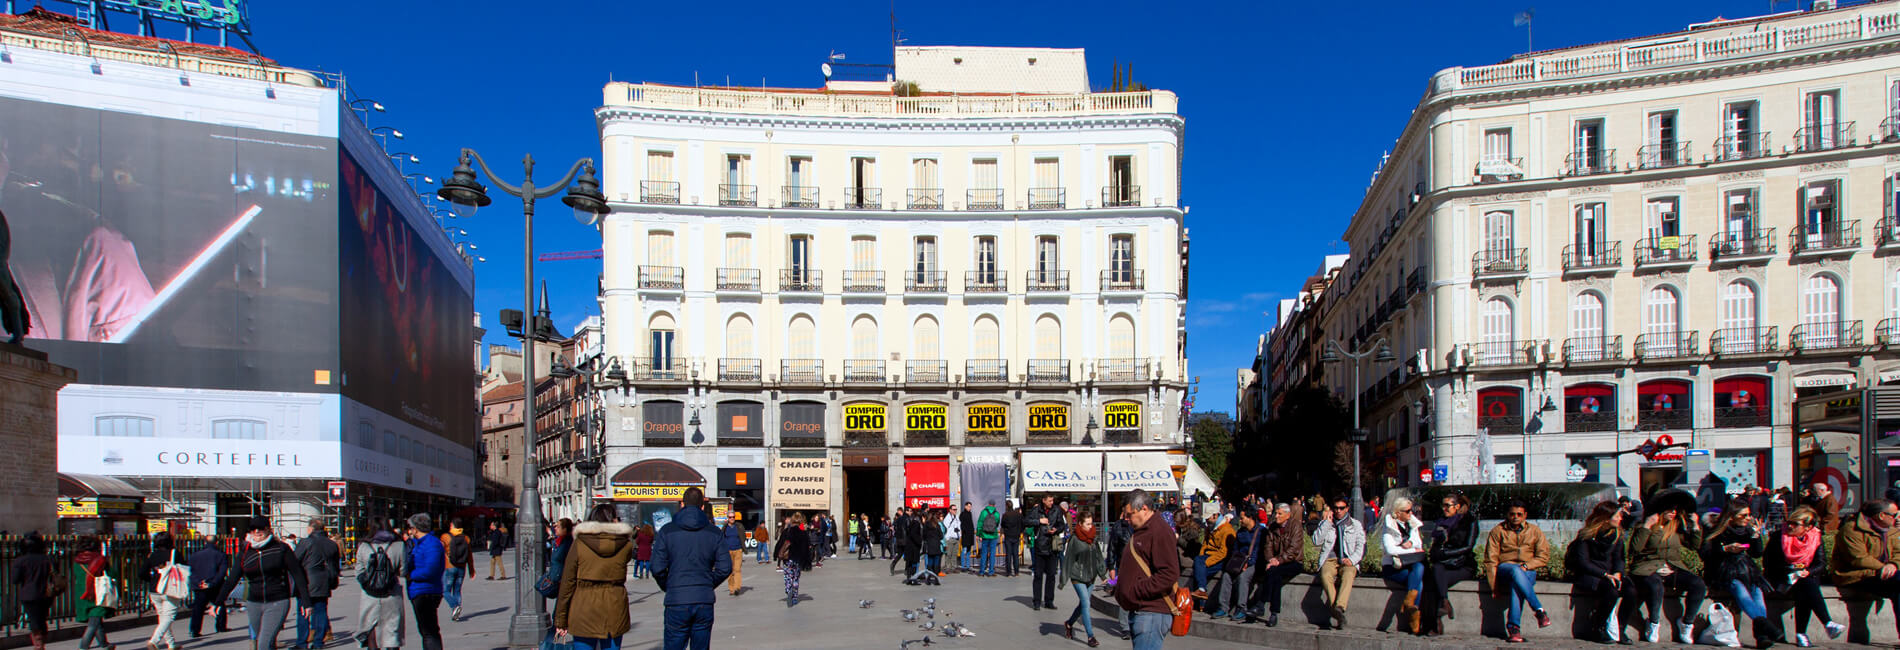 Salida Sinewi galería Hotel en la Puerta del Sol de Madrid | Hotel Europa - Oficial